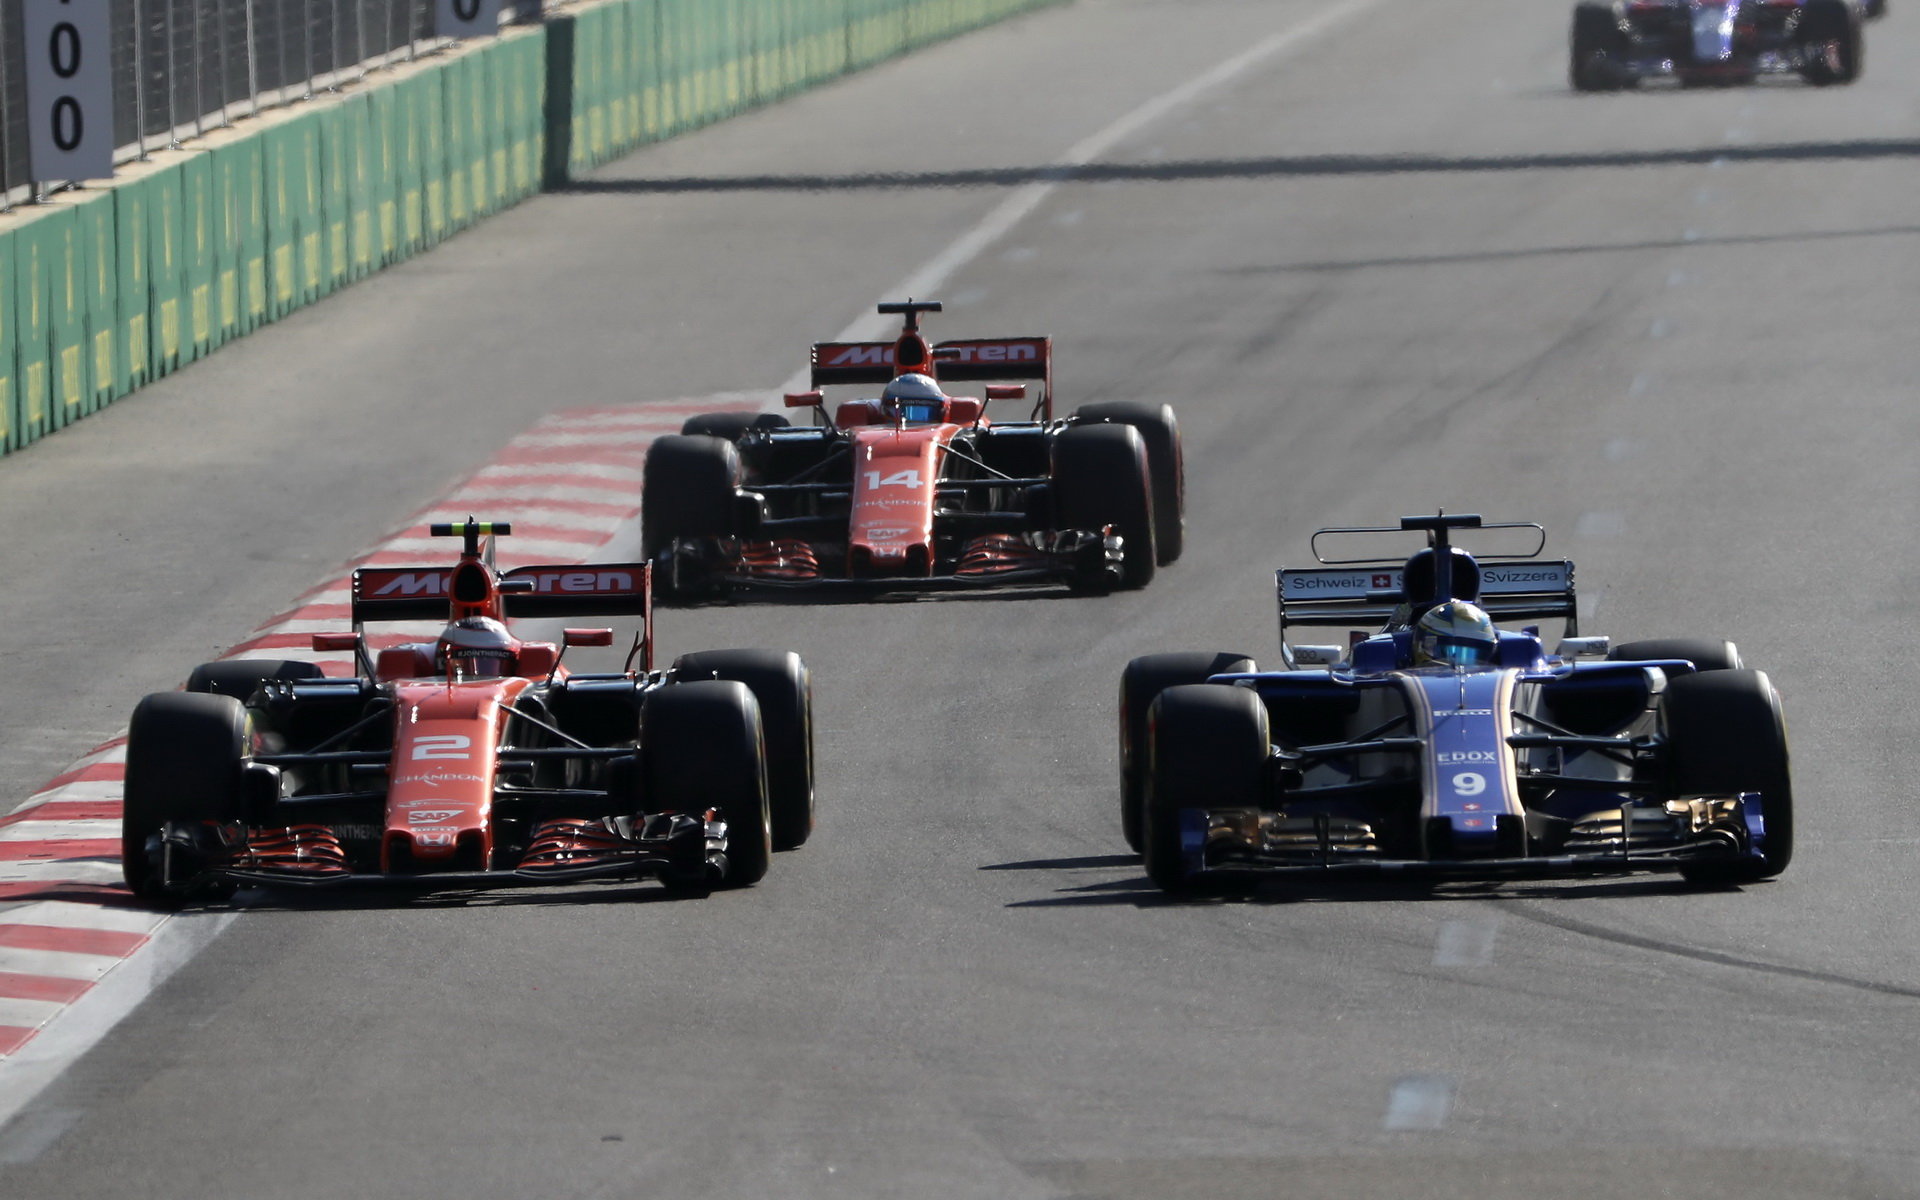 Marcus Ericsson, Stoffel Vandoorne a Fernando Alonso v závodě v Baku